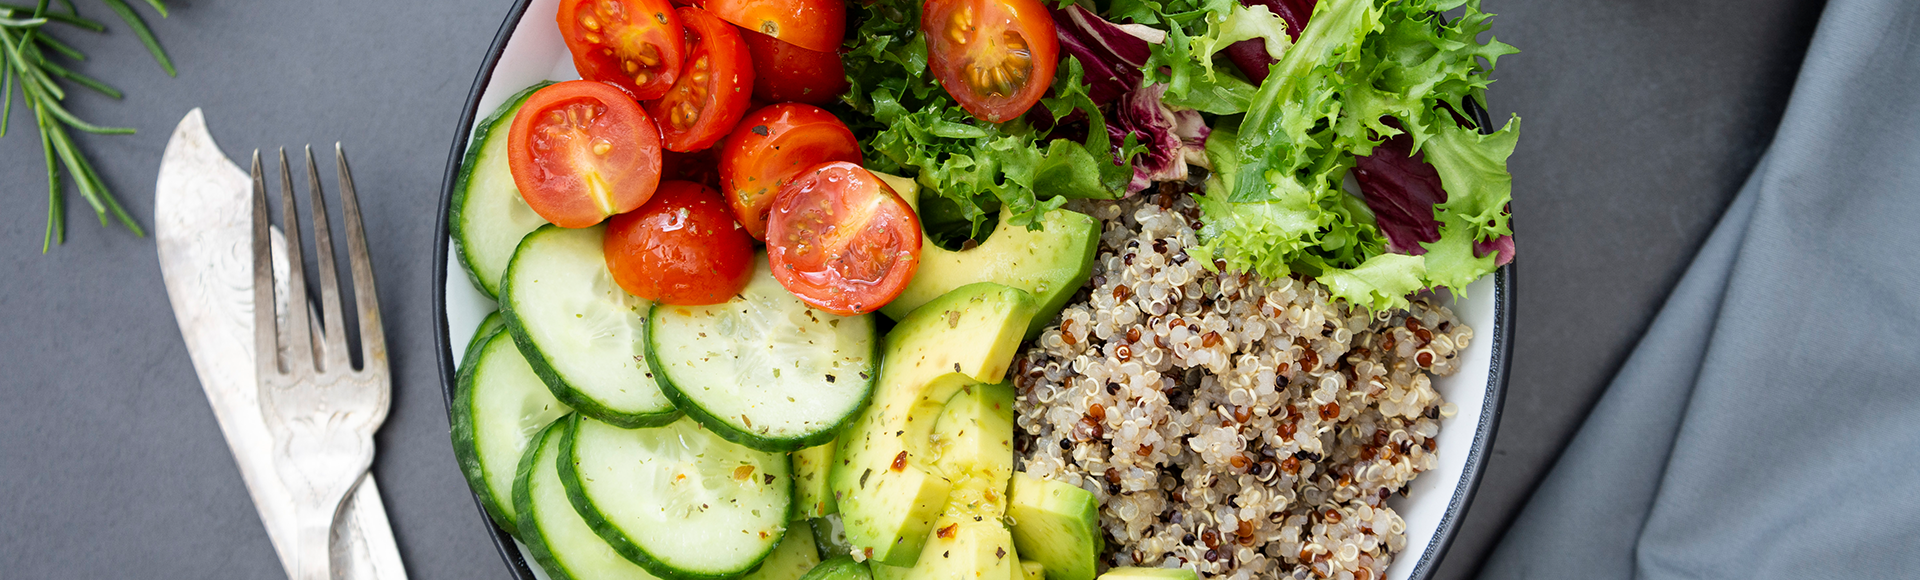 Hladna salata od kvinoje i povrća